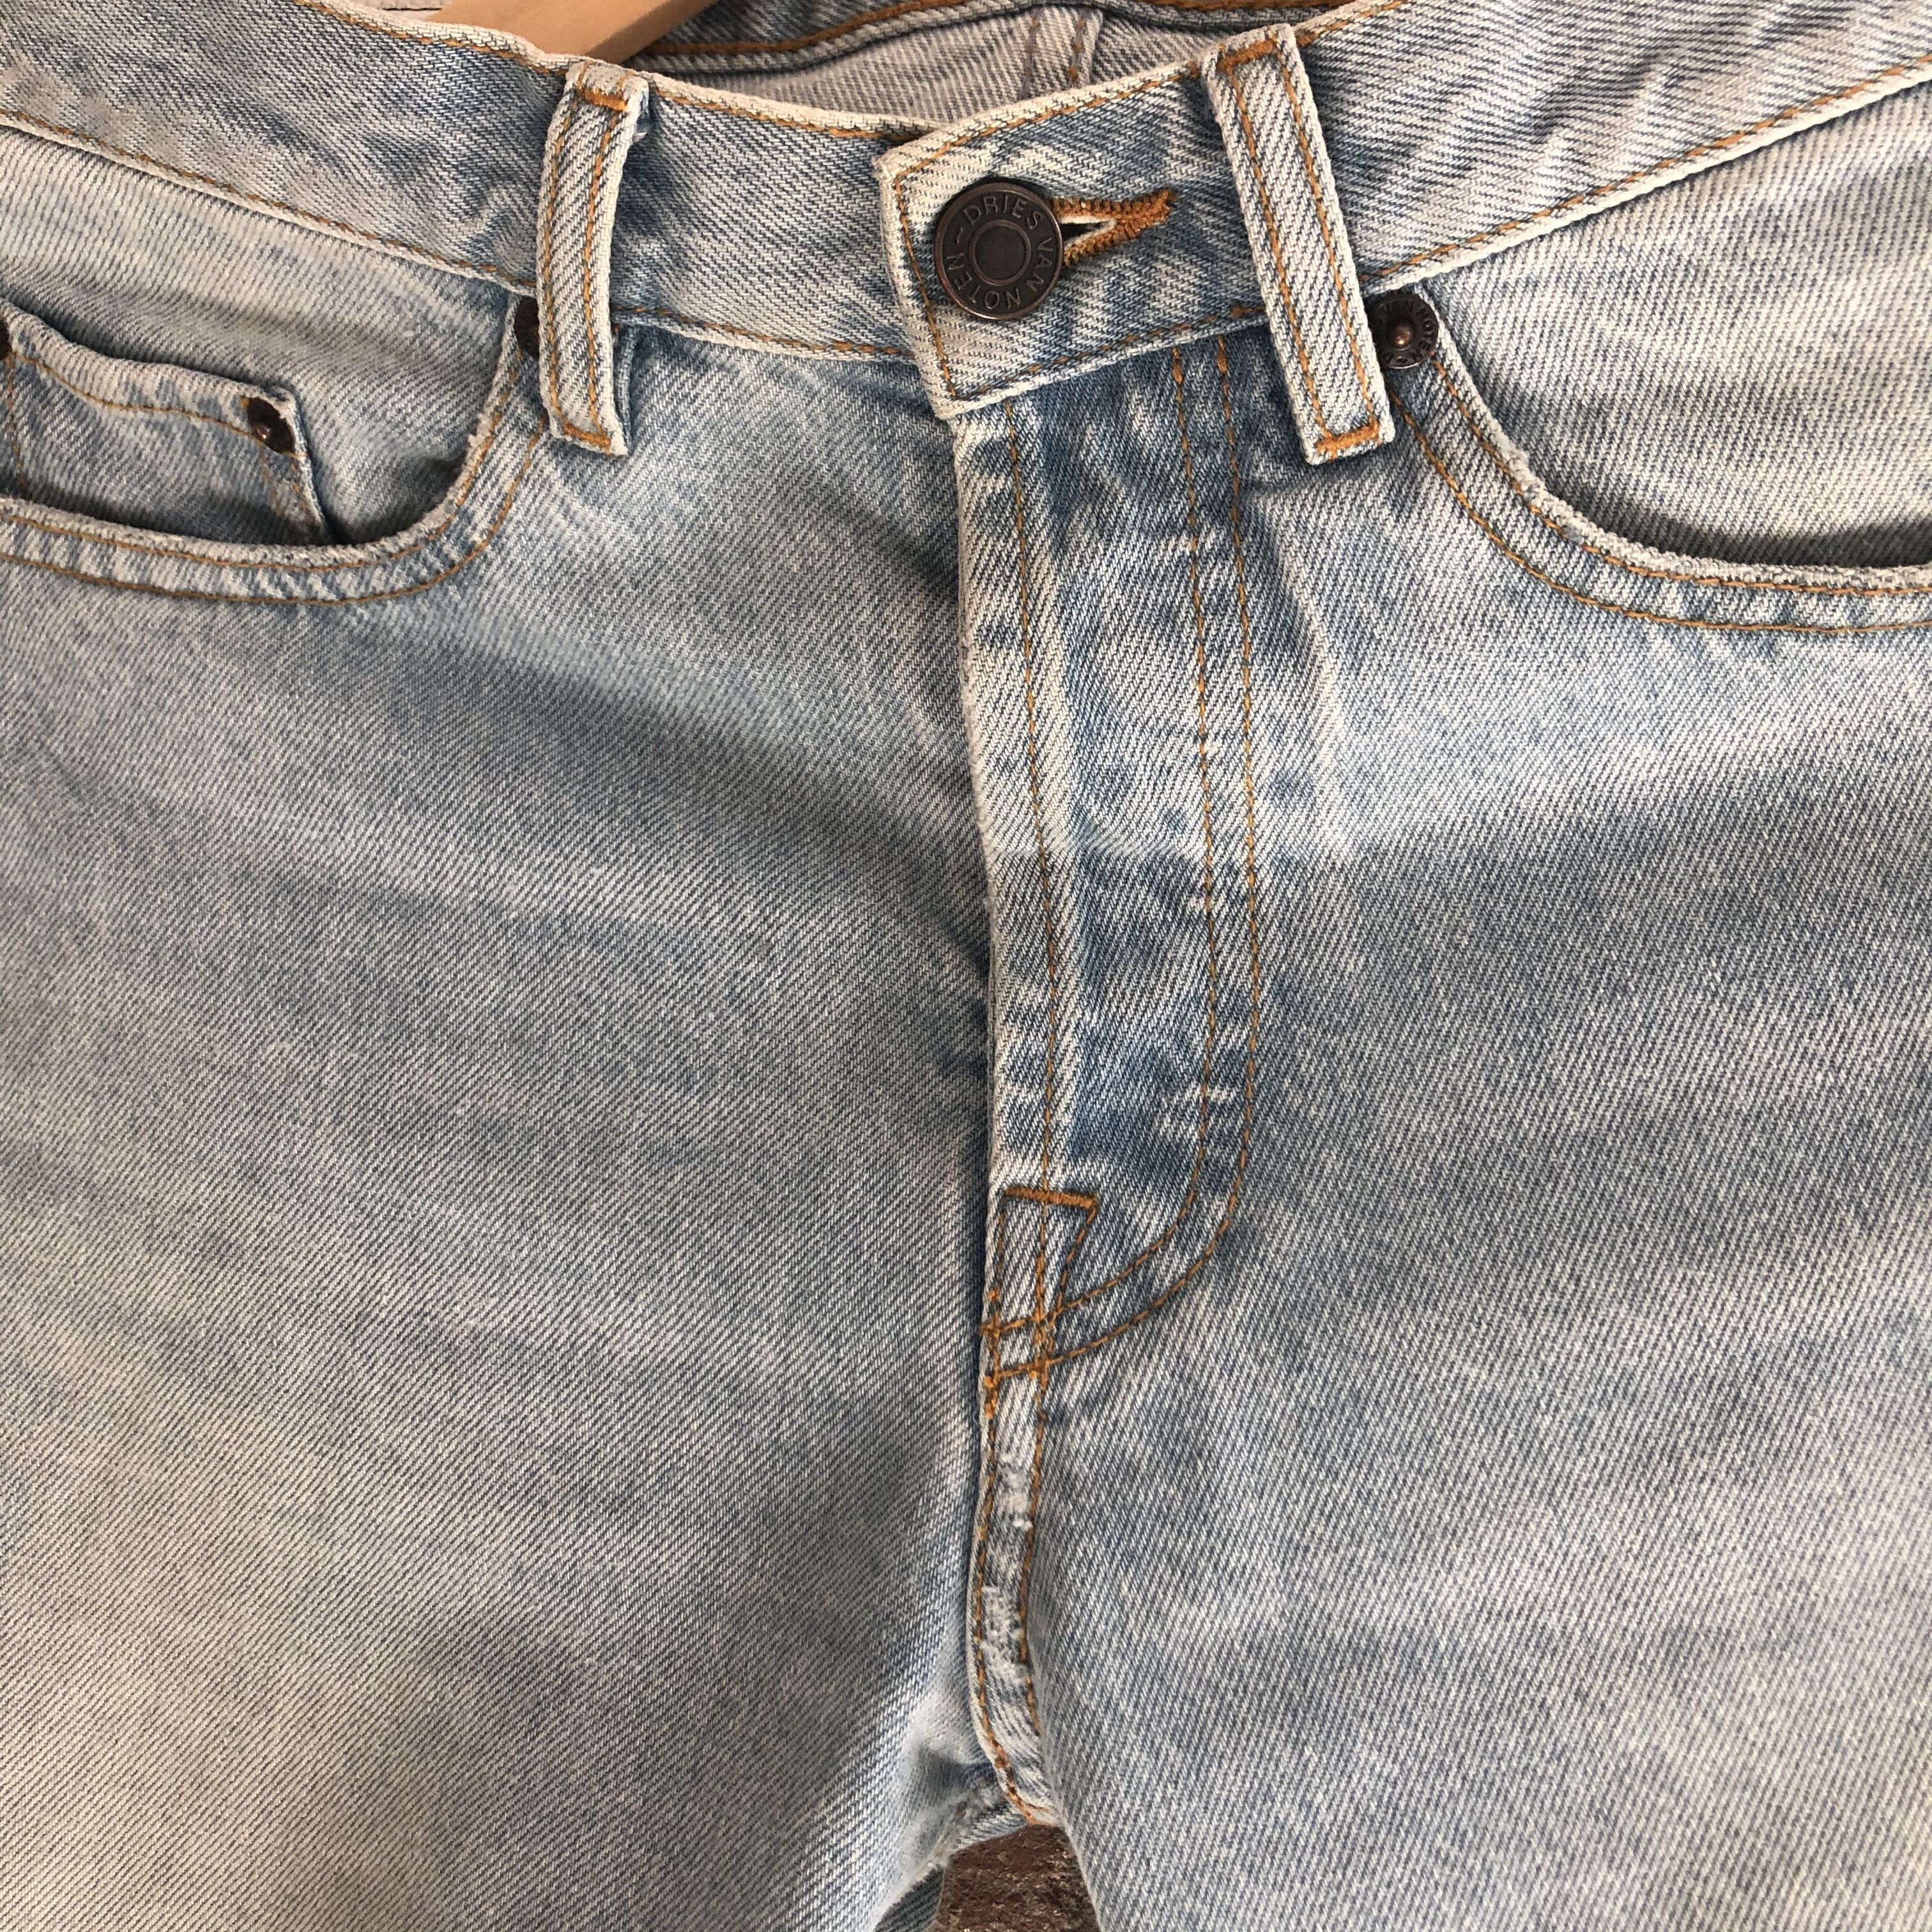 Dries Van Noten Light Blue Wash Denim Jeans Size US 29 - 2 Preview